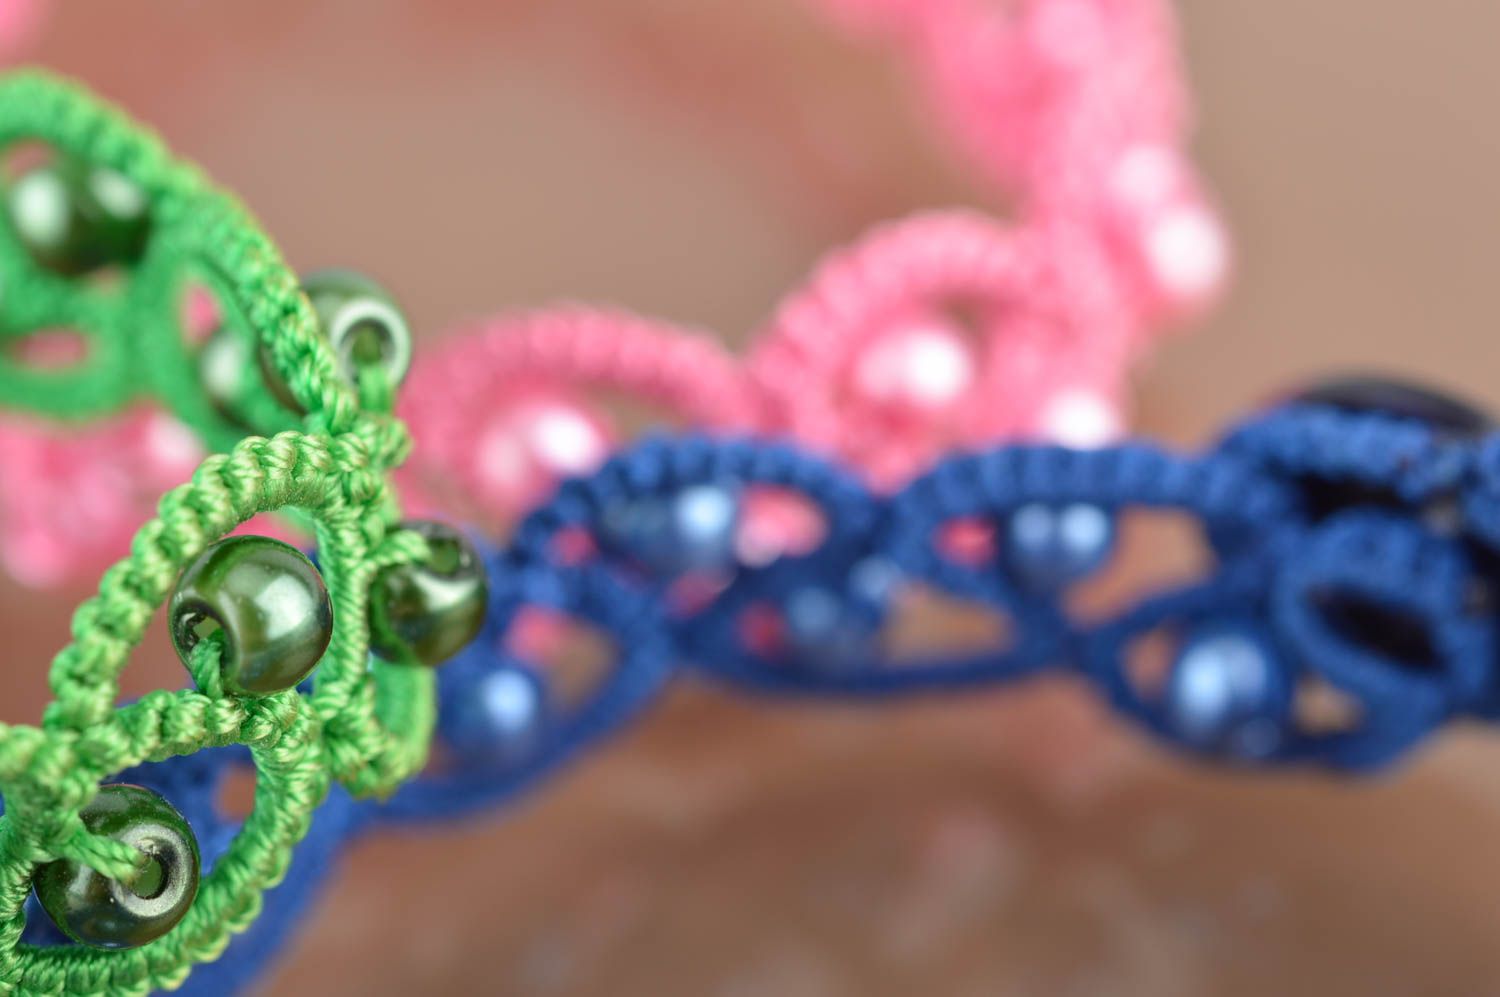 Комплект браслетов в технике фриволите синий розовый зеленый 3 изделия хенд мейд фото 3